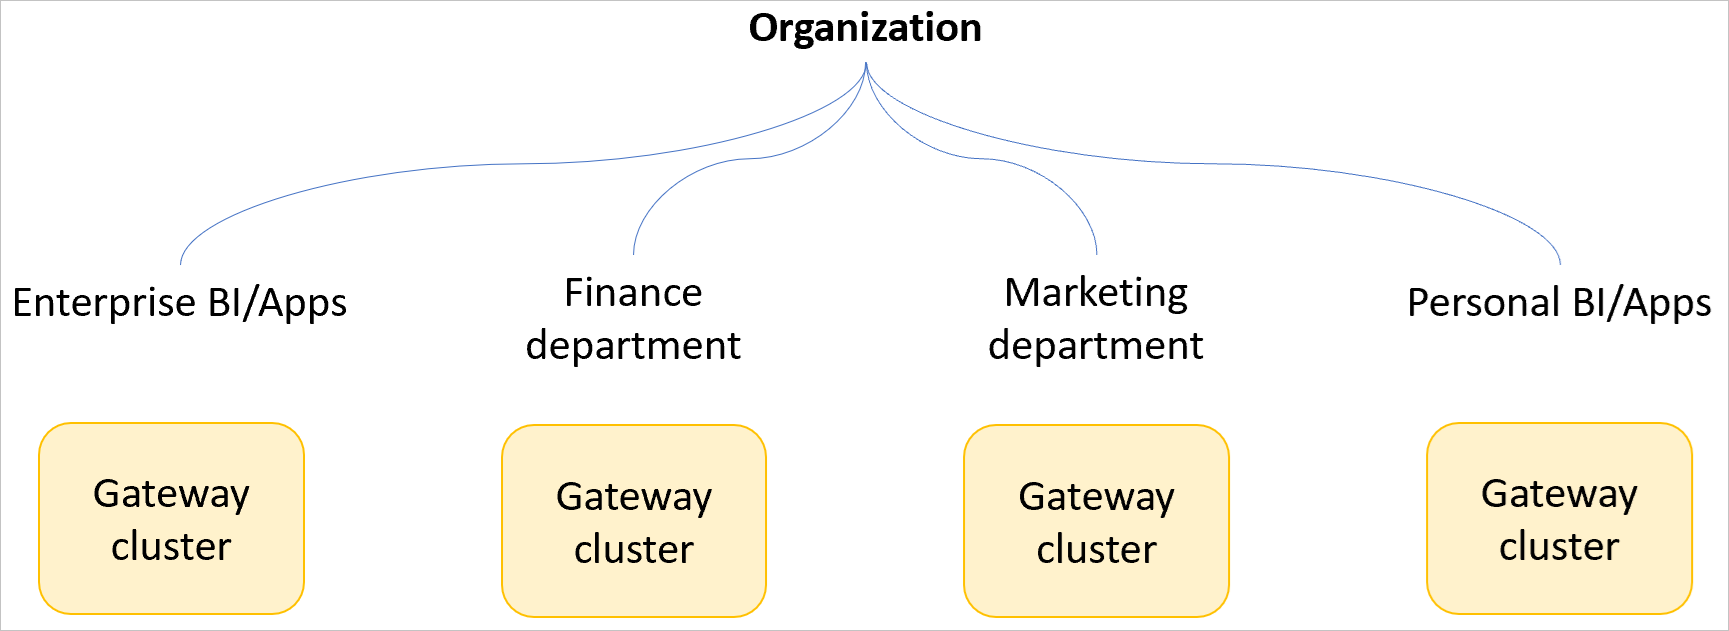 Bild einer Beispielorganisation mit separaten Gatewayclustern für Unternehmens-BI und -Apps, die Finanzabteilung, die Marketingabteilung sowie persönliche BI und Apps.